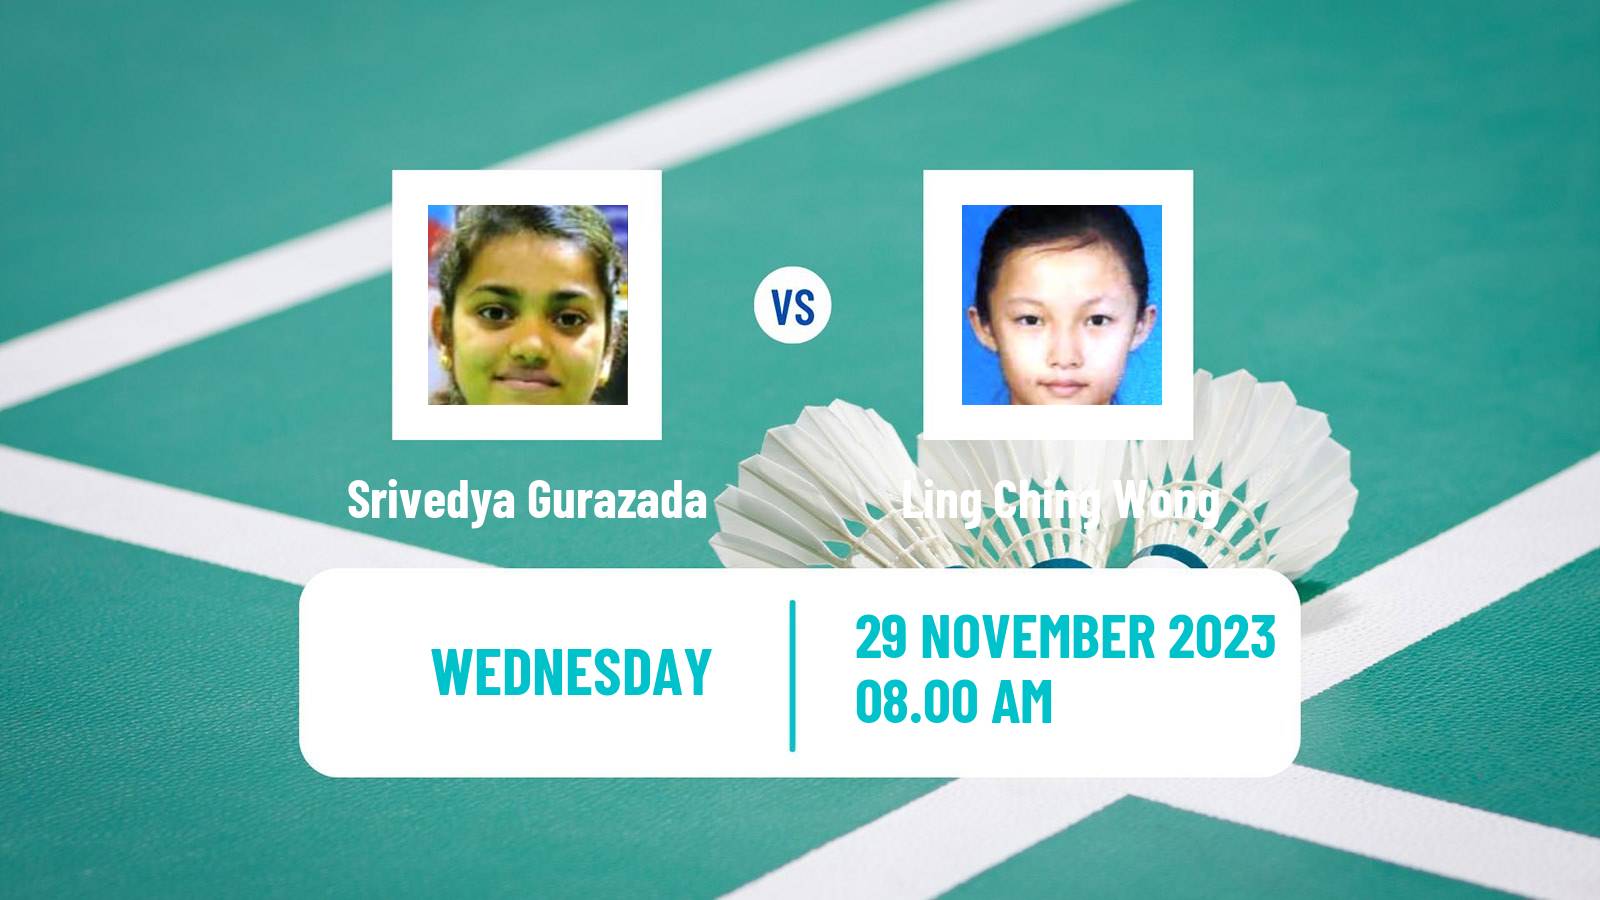 Badminton BWF World Tour Syed Modi International Championships Women Srivedya Gurazada - Ling Ching Wong